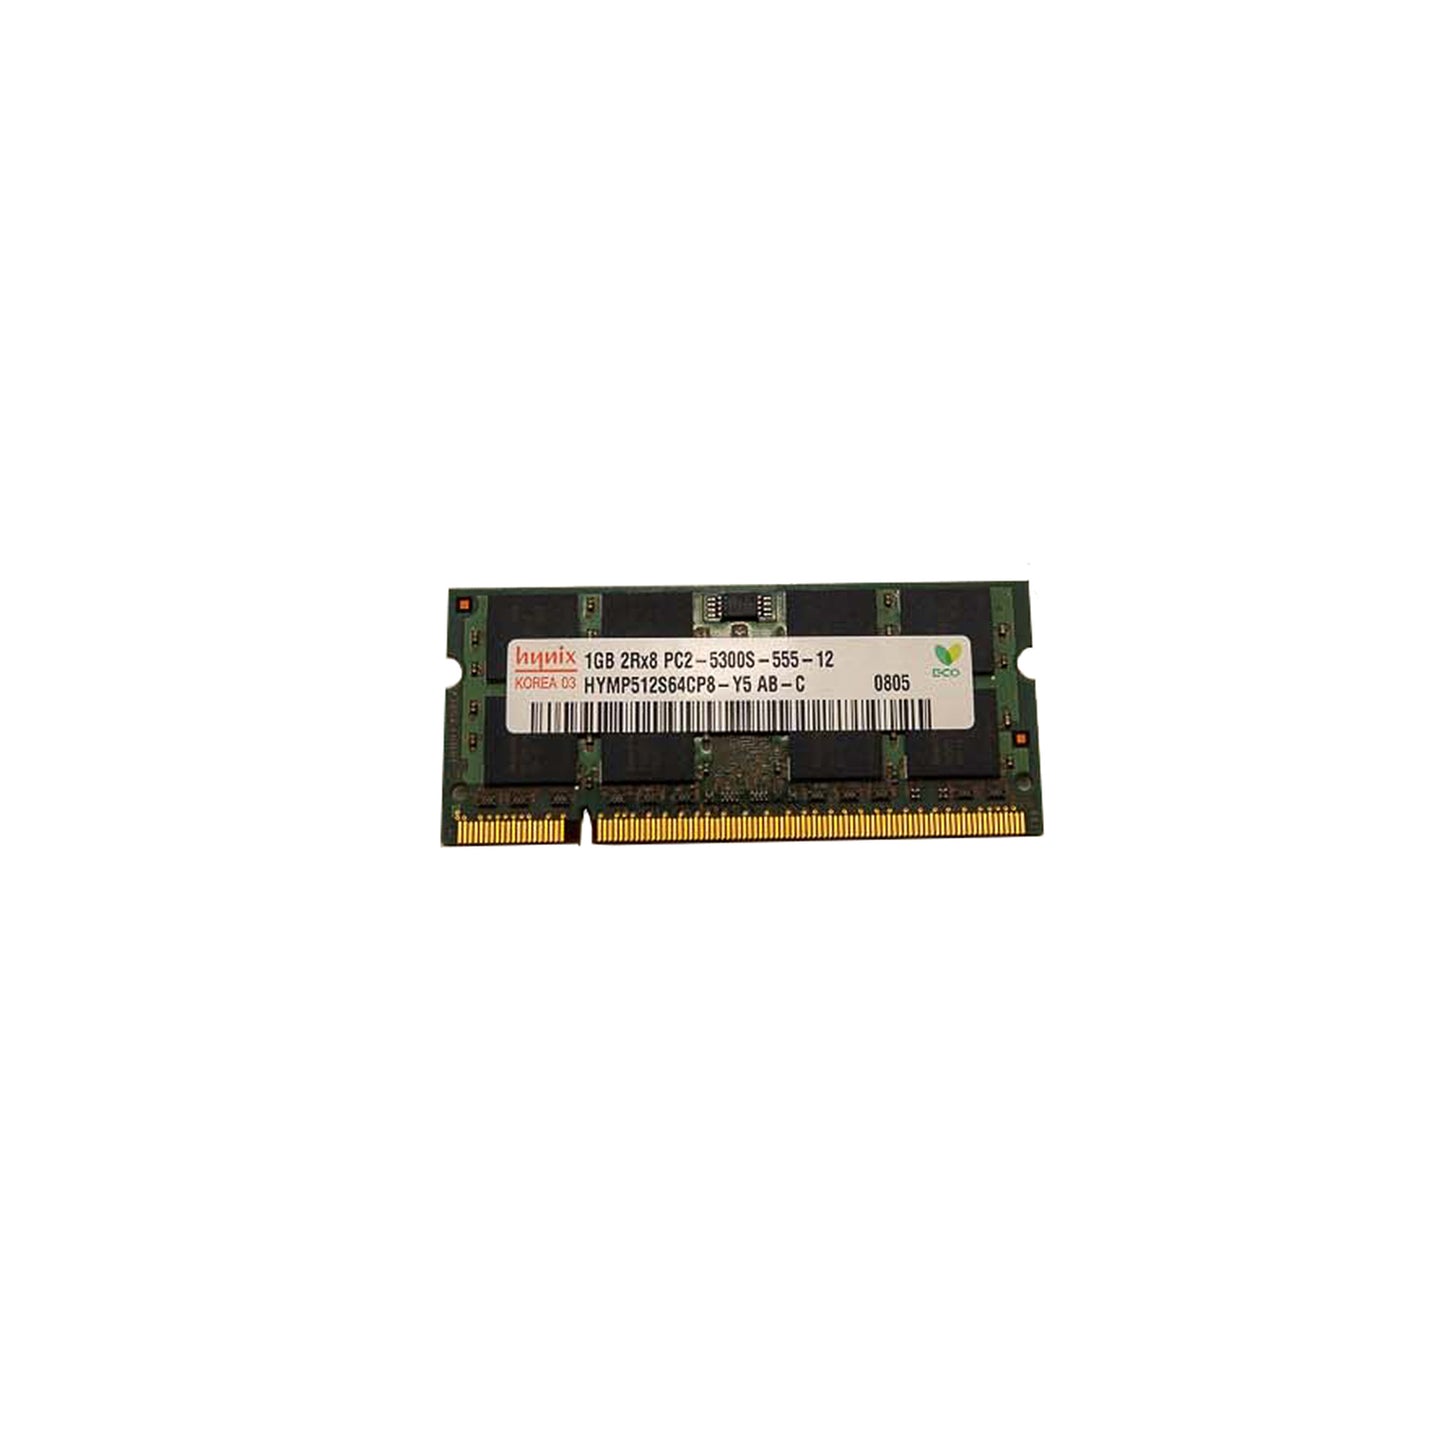 Memória Ram SODIMM Hynix DDR2 1GB 5300S HYMP512S64CP8-Y5 AB-C